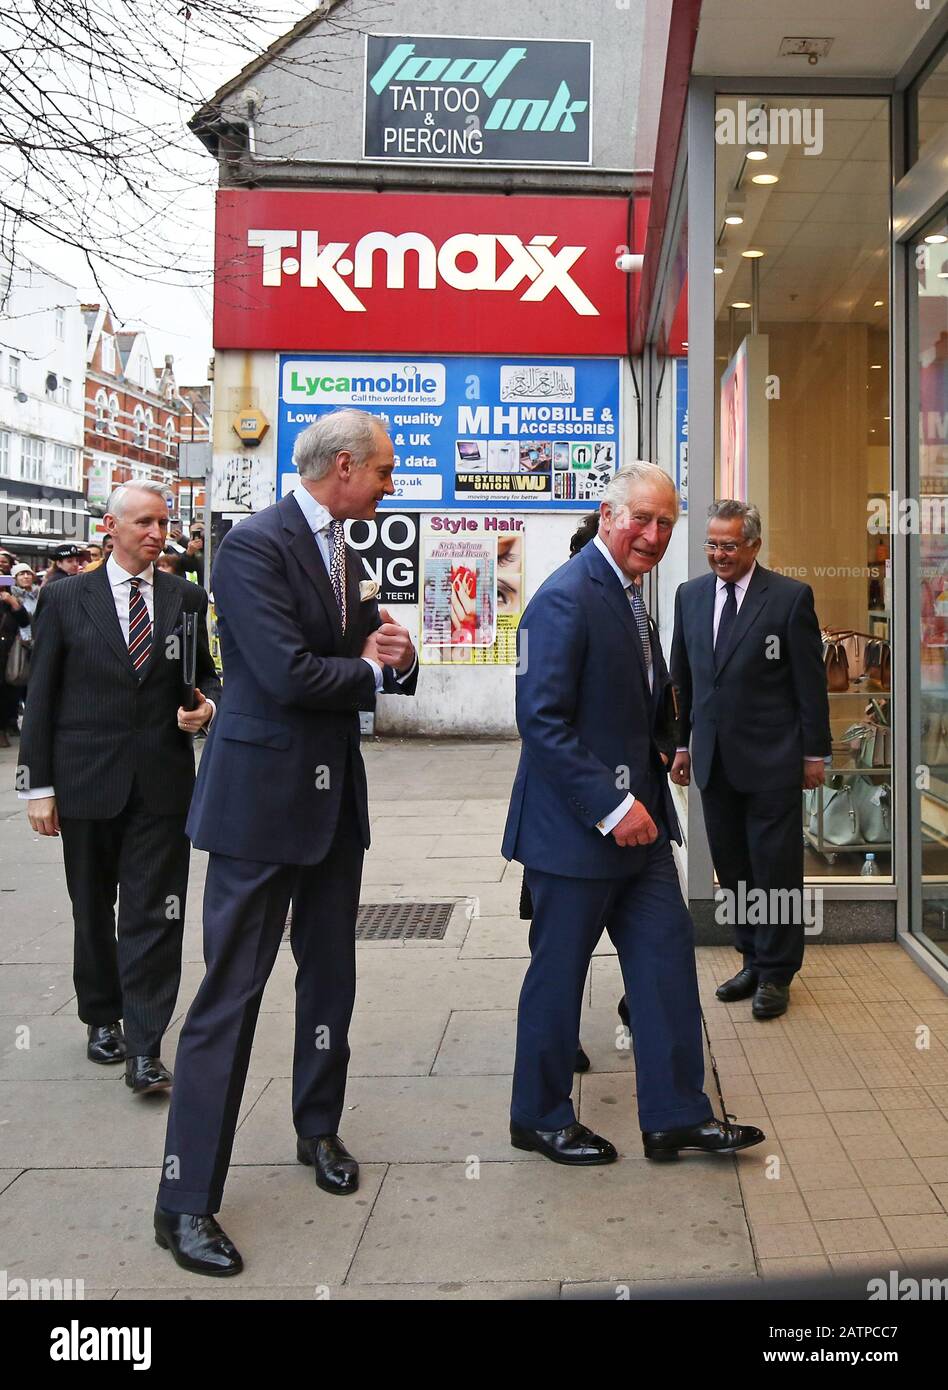 Der Prince of Wales kommt in einem TK Maxx Store in der Tooting High Street, London an, wo er sich mit Mitarbeitern treffen soll, die Prince's Trust Alumni im Laden sind. Stockfoto